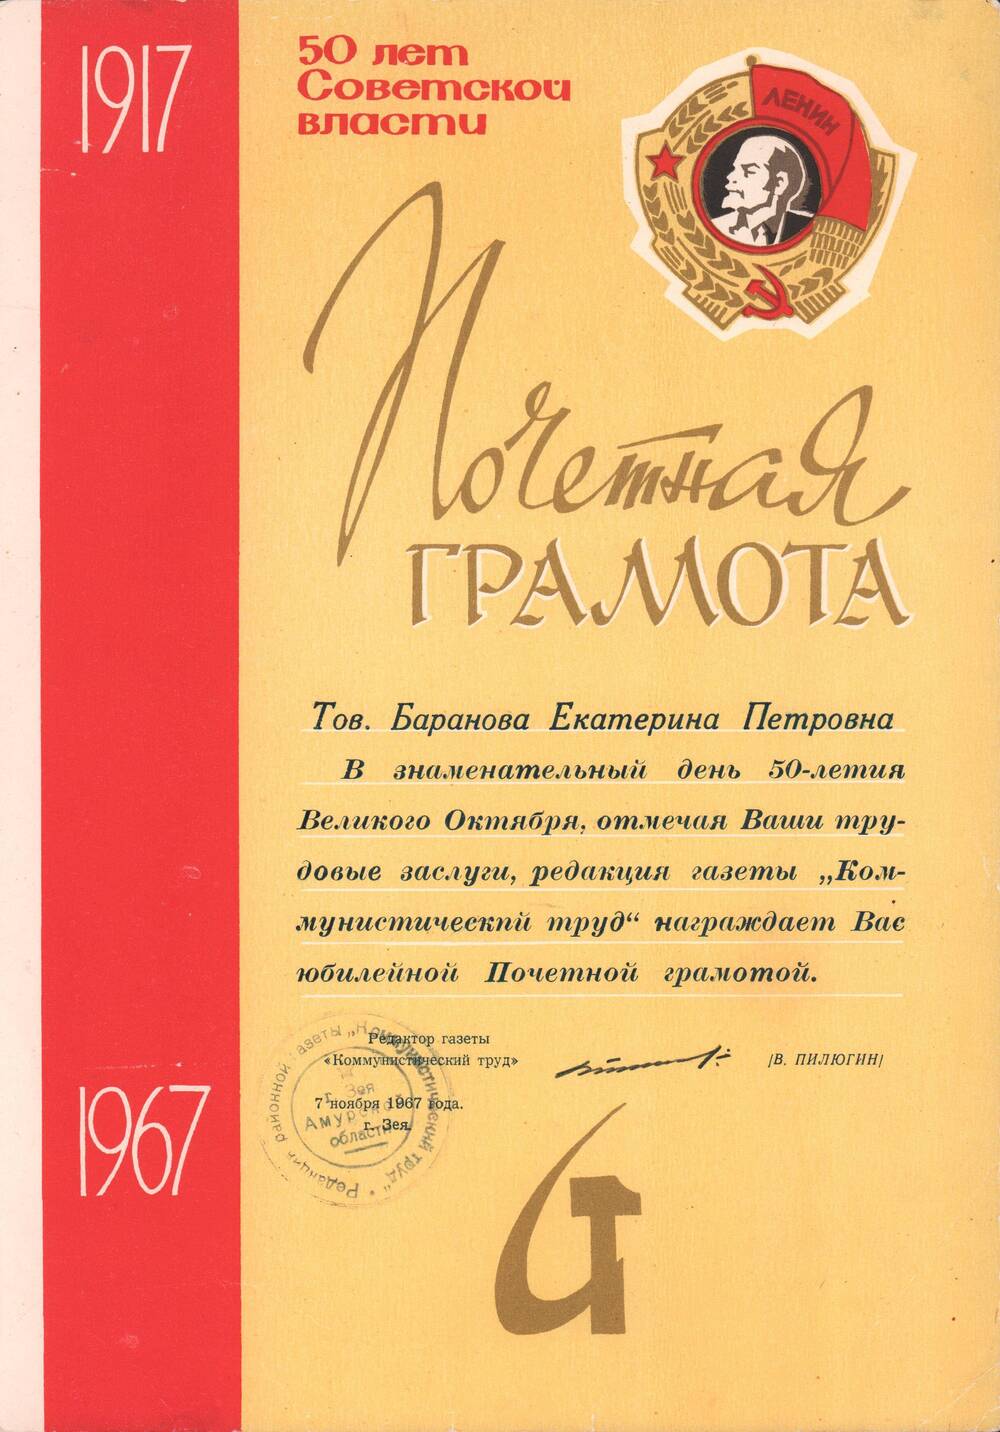 Грамота почетная  в честь 50-летия Октября от редакции газеты Коммунистический труд, 1967 год.